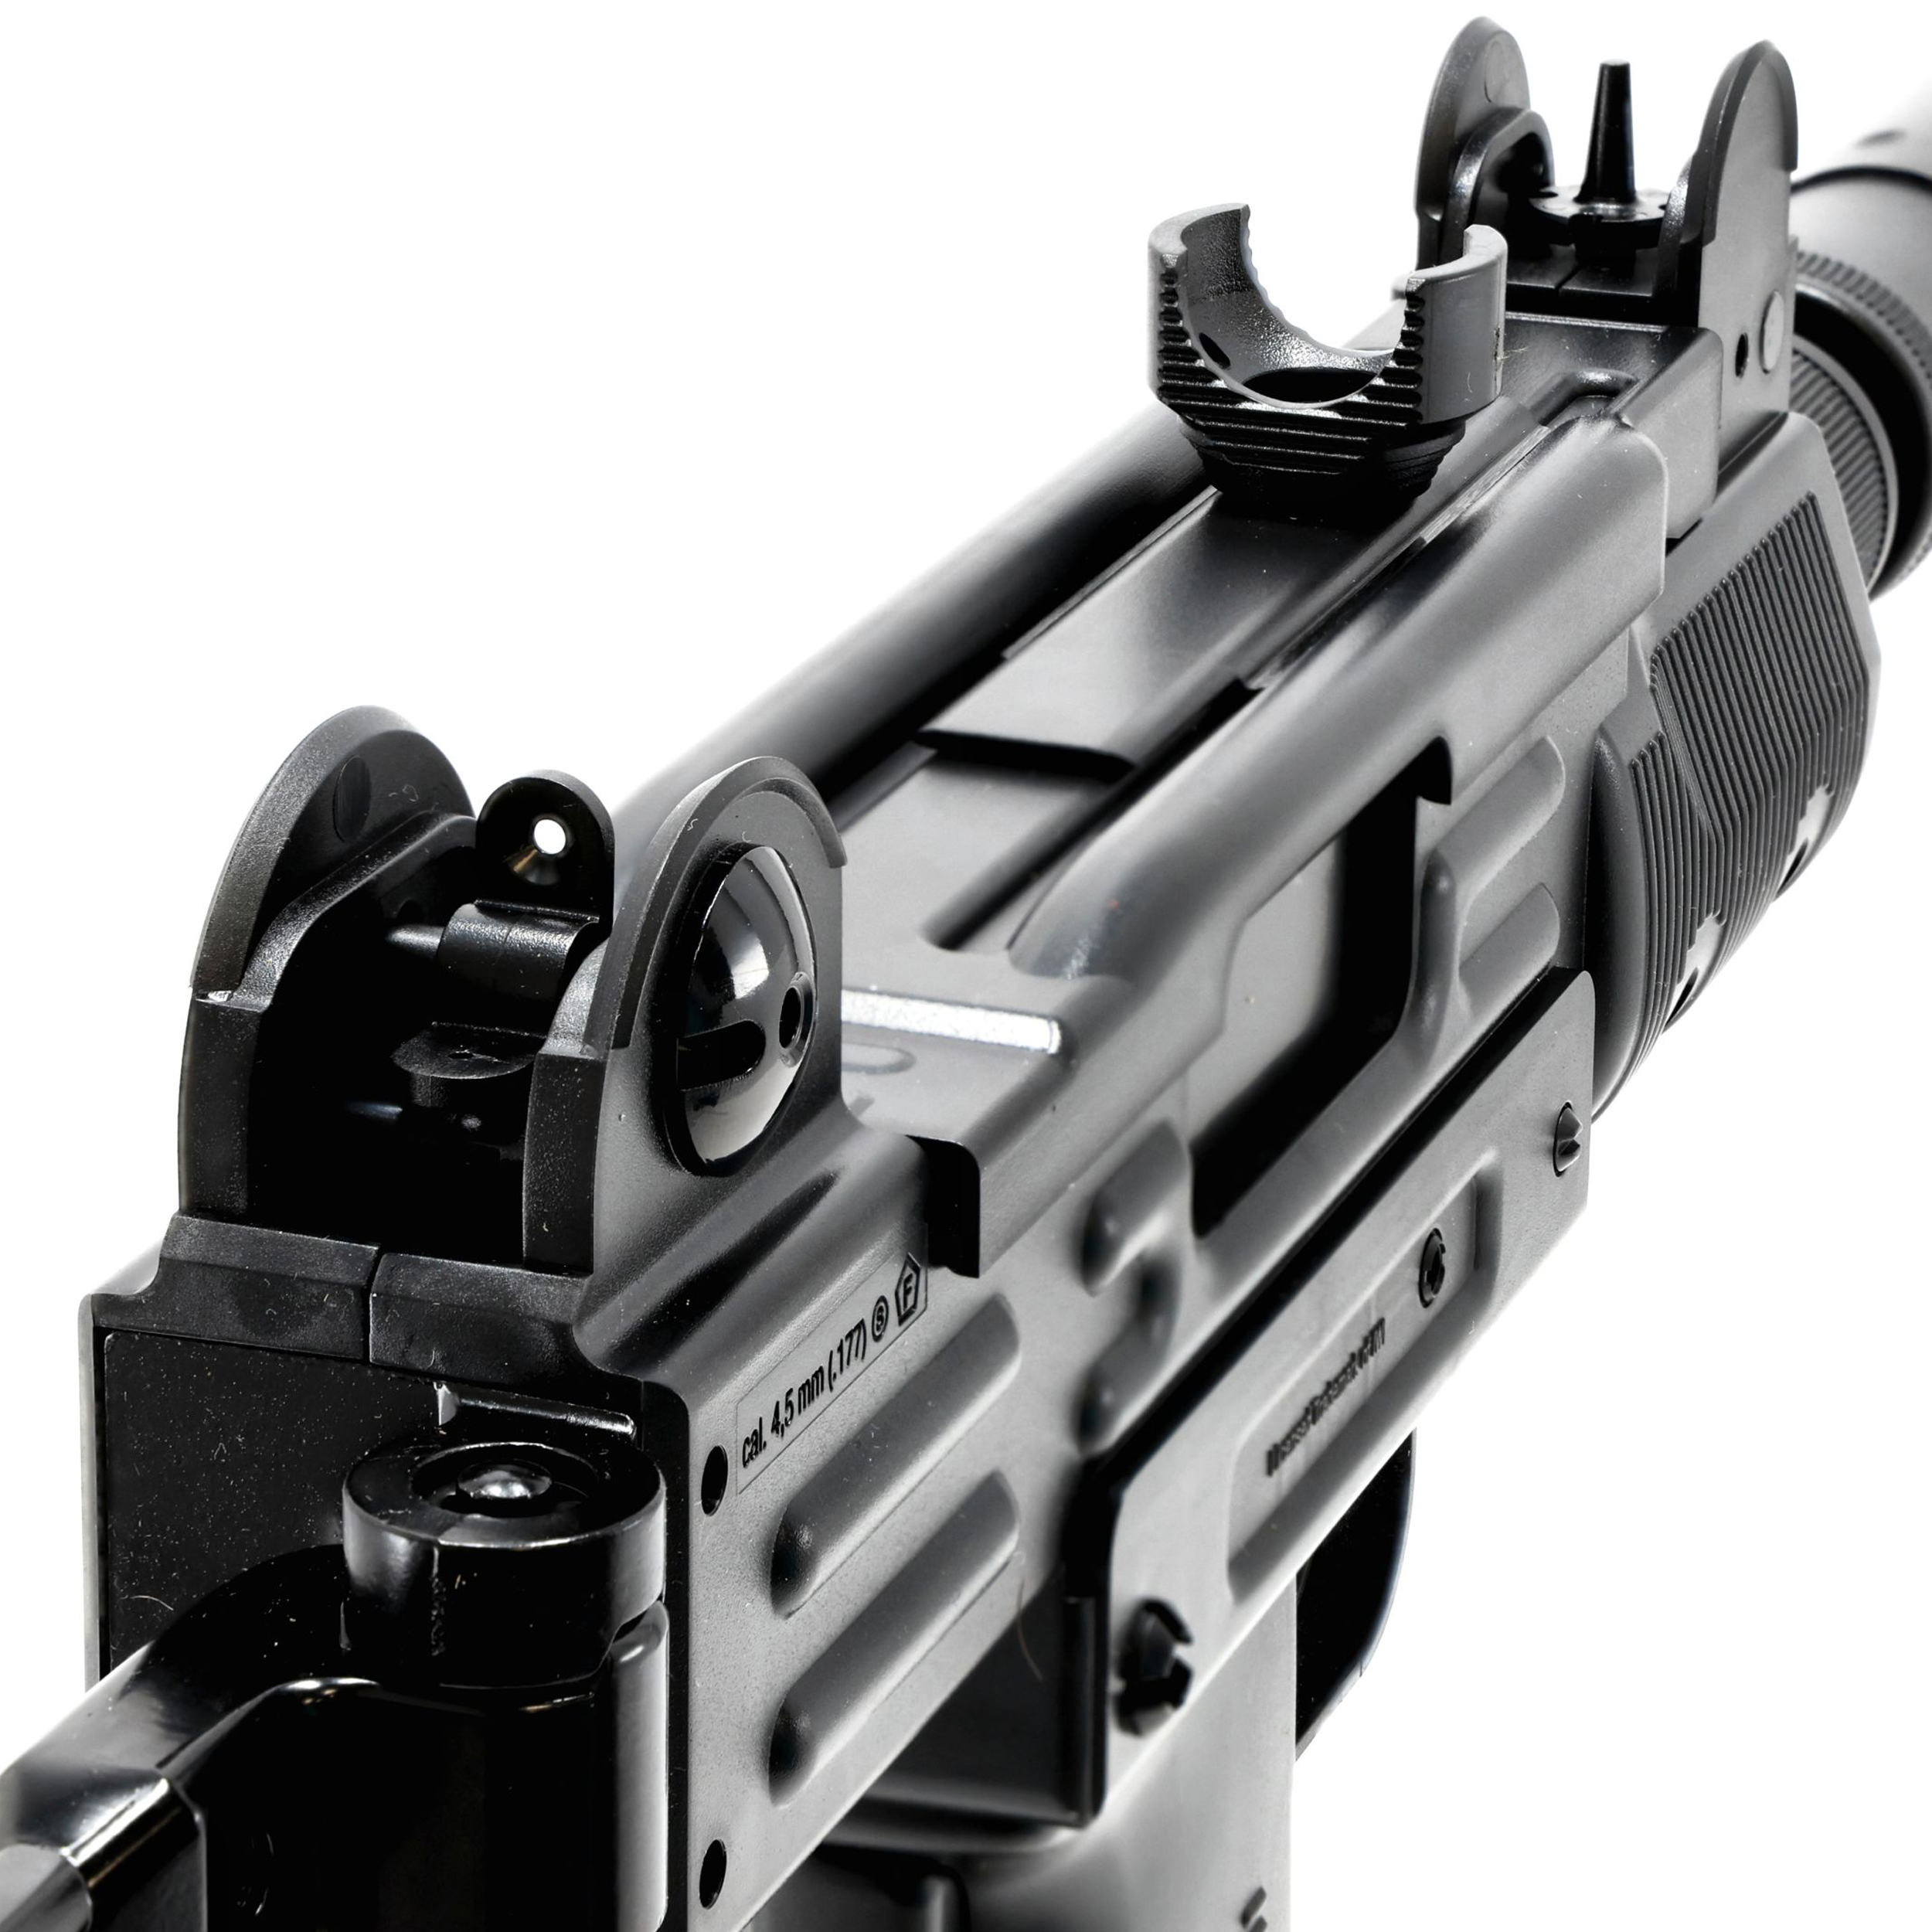 Pistolet mitrailleur B&T CO2 (genre Uzi) à plombs et billes acier 4.5 mm  Gamo MP9 - Pistolet à plomb